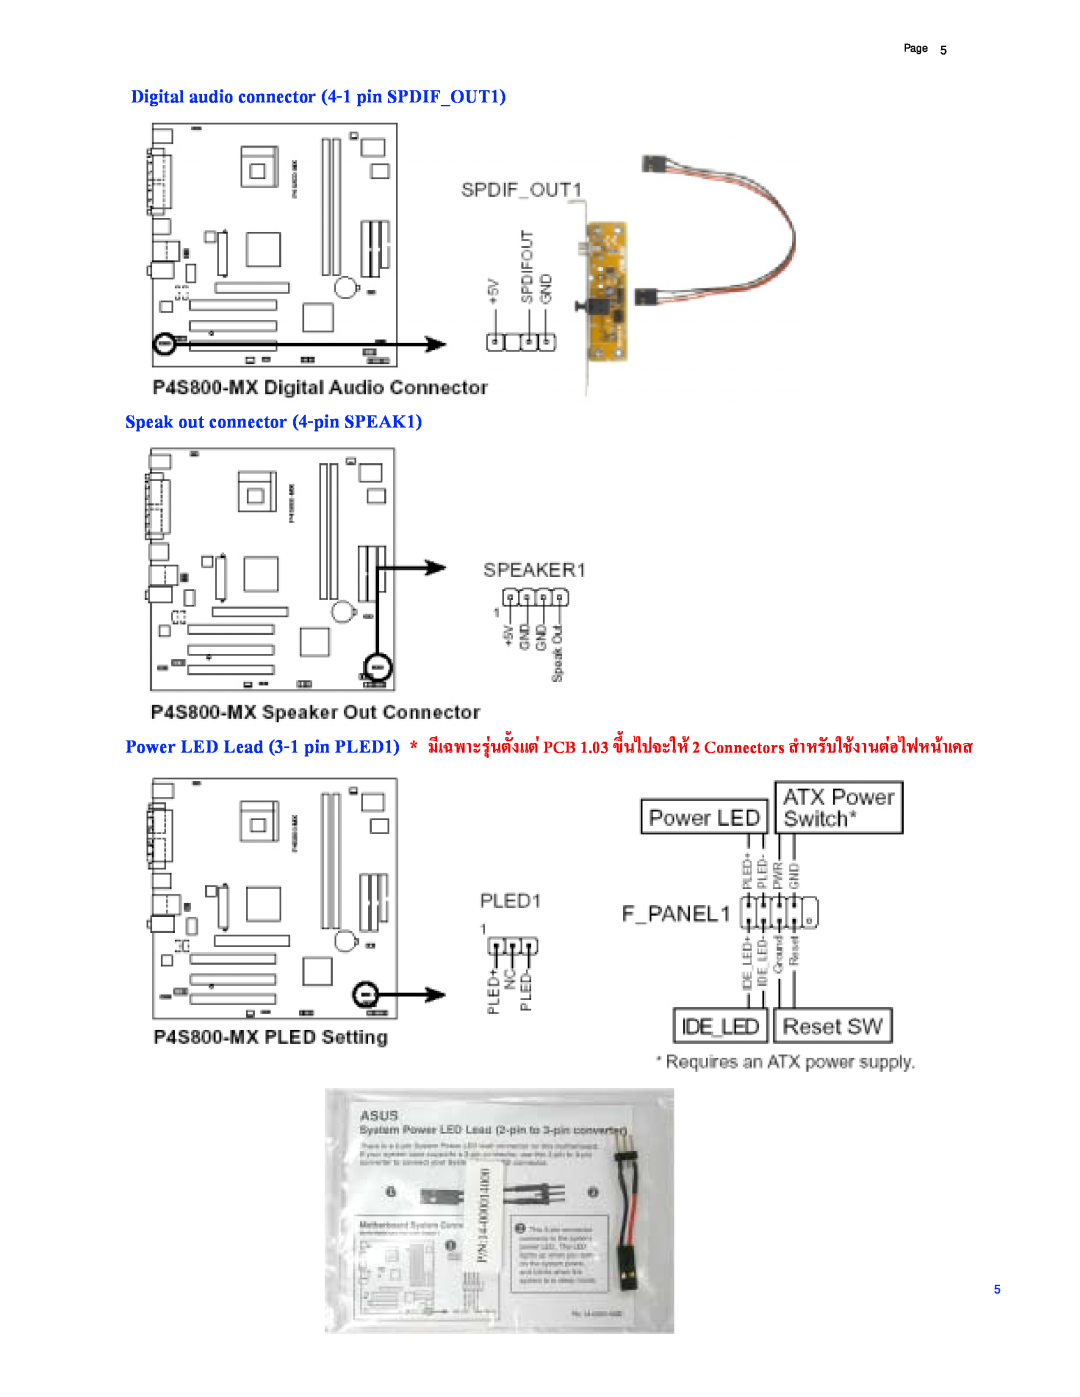 Asus P4S800-MX manual Digital audio connector 4-1 pin SPDIFOUT1, Speak out connector 4-pin SPEAK1, Page 